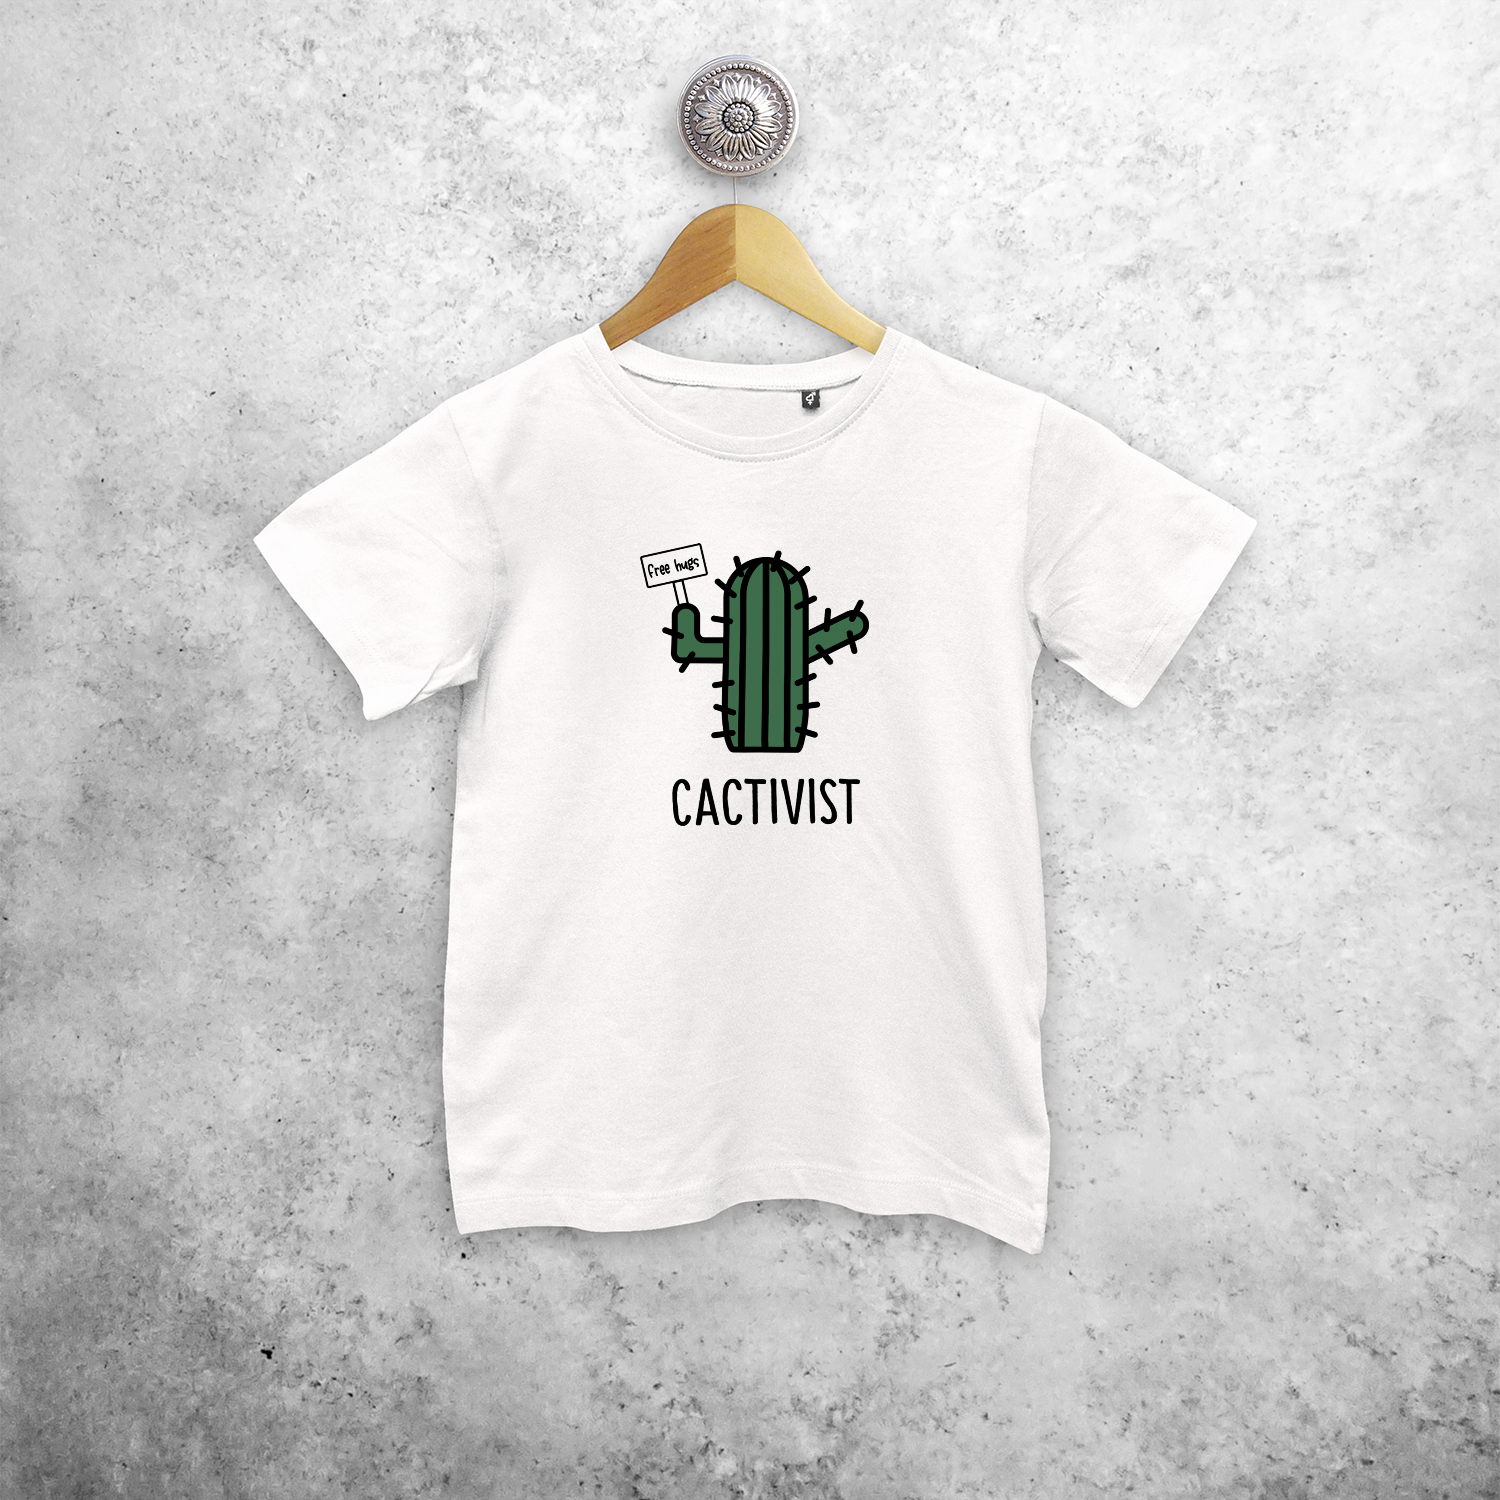 'Cactivist' kids shortsleeve shirt